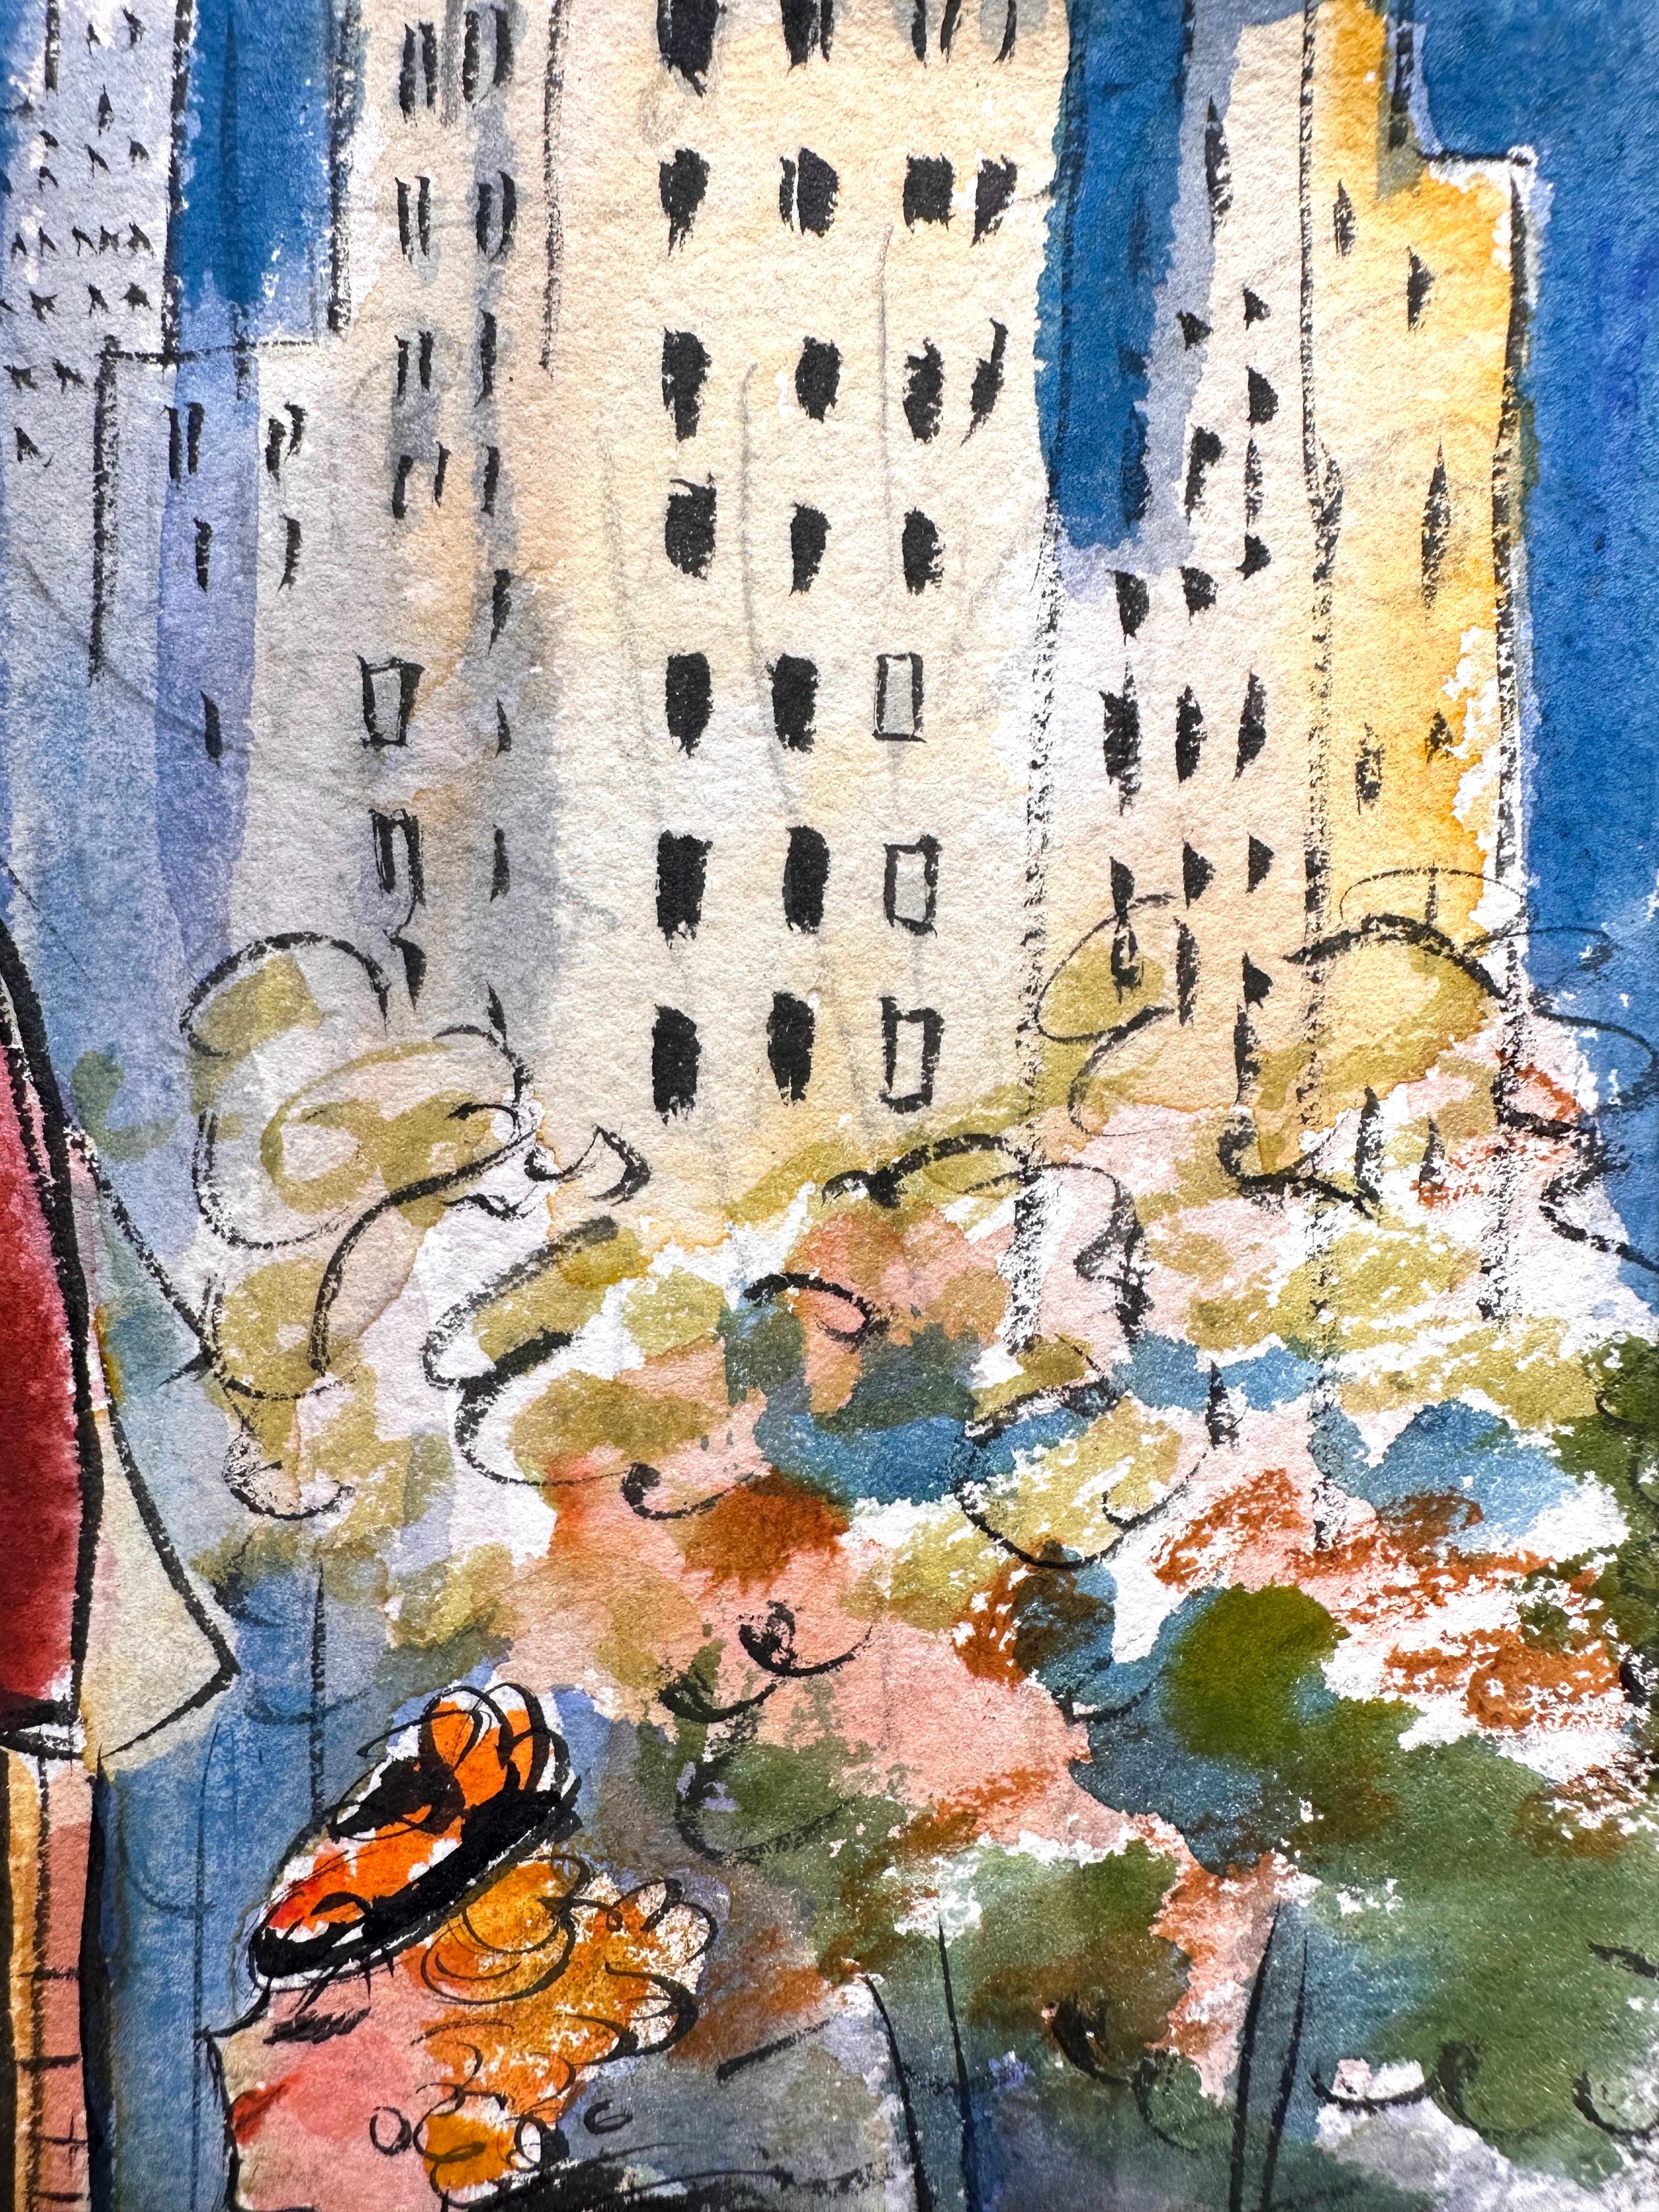 Barbara Shermund (1899-1978). Taverne sur le vert. Aquarelle et encre sur papier, 9 3/8 x 12 pouces. Non signée. Excellent état. 

Provenance : Ethel Maud Mott Herman, artiste (1883-1984), West Orange NJ.

L'échelle et la bande verticale orange à